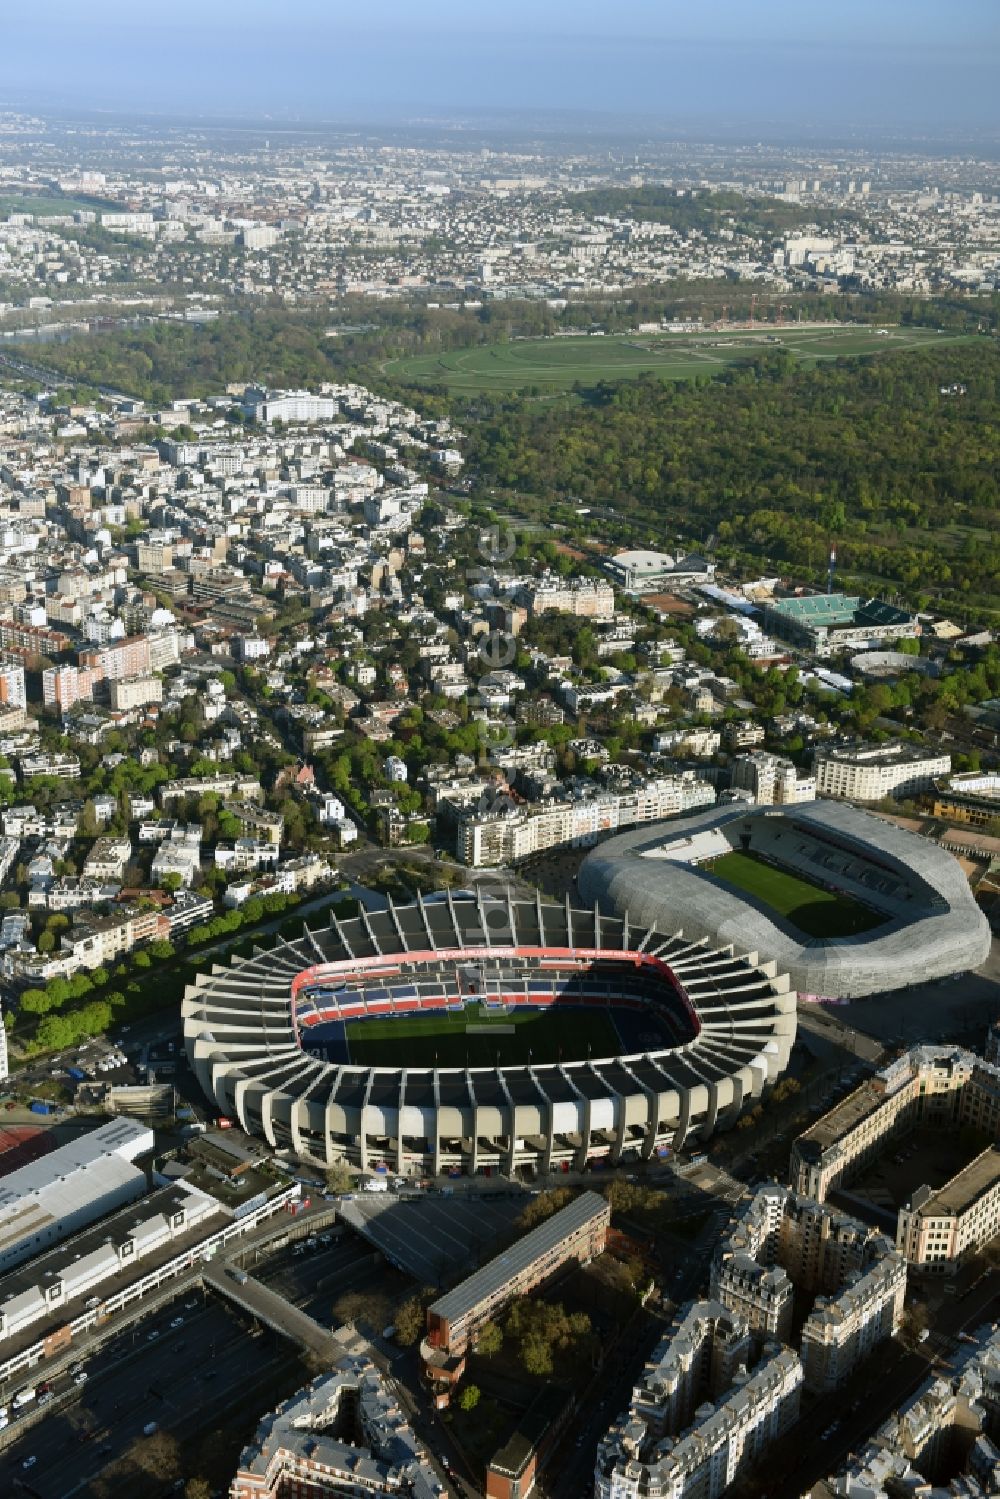 Paris von oben - Sportstätten-Gelände der Arena des Stadion Prinzenpark an der Rue du Commandant Guilbaud in Paris Boulogne-Billancourt in Ile-de-France, Frankreich